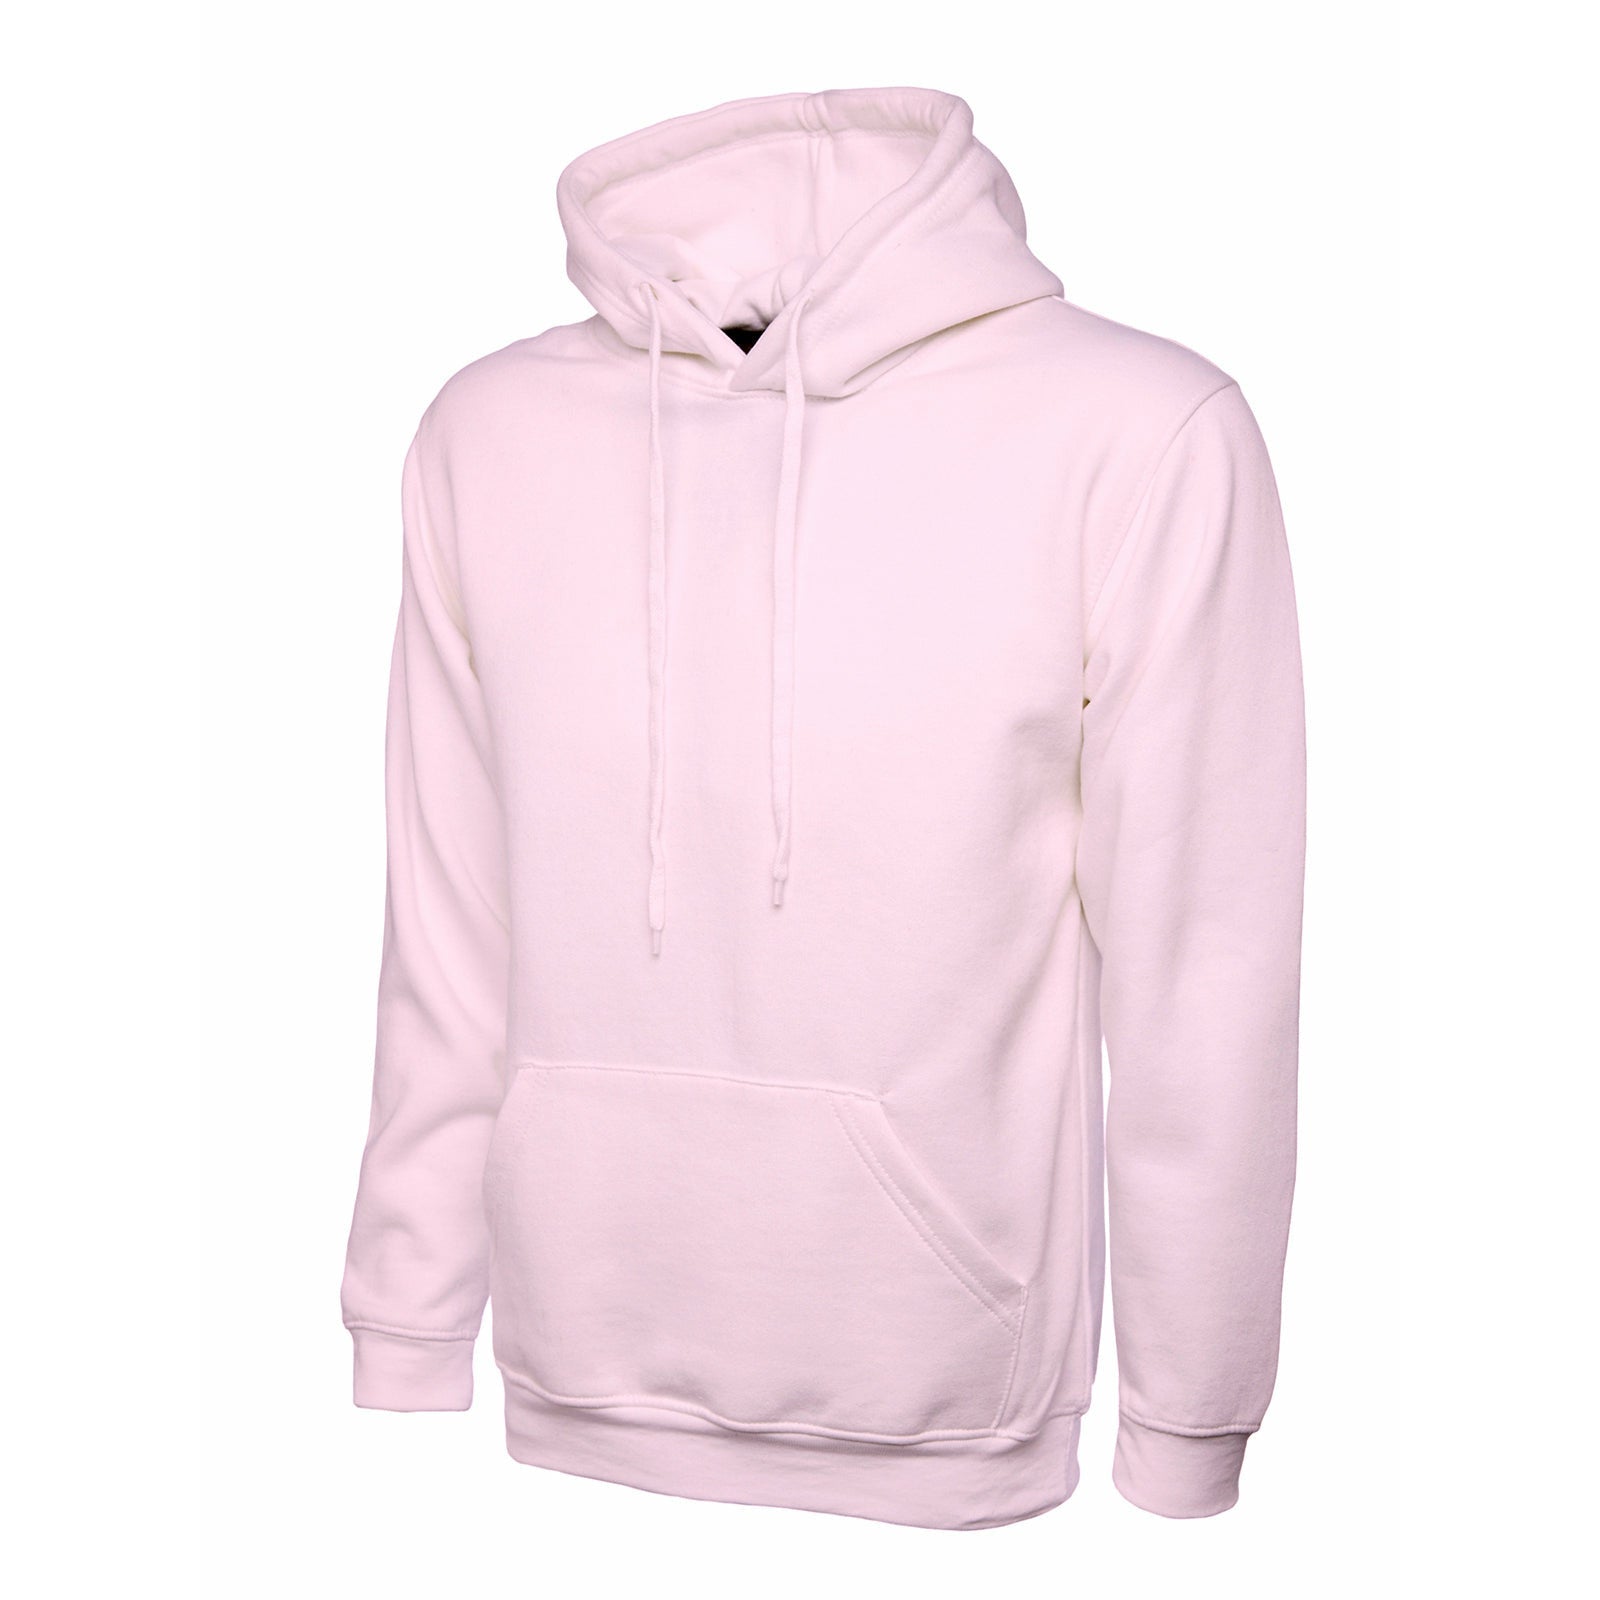 Ladies Deluxe Hooded Sweatshirt Pink